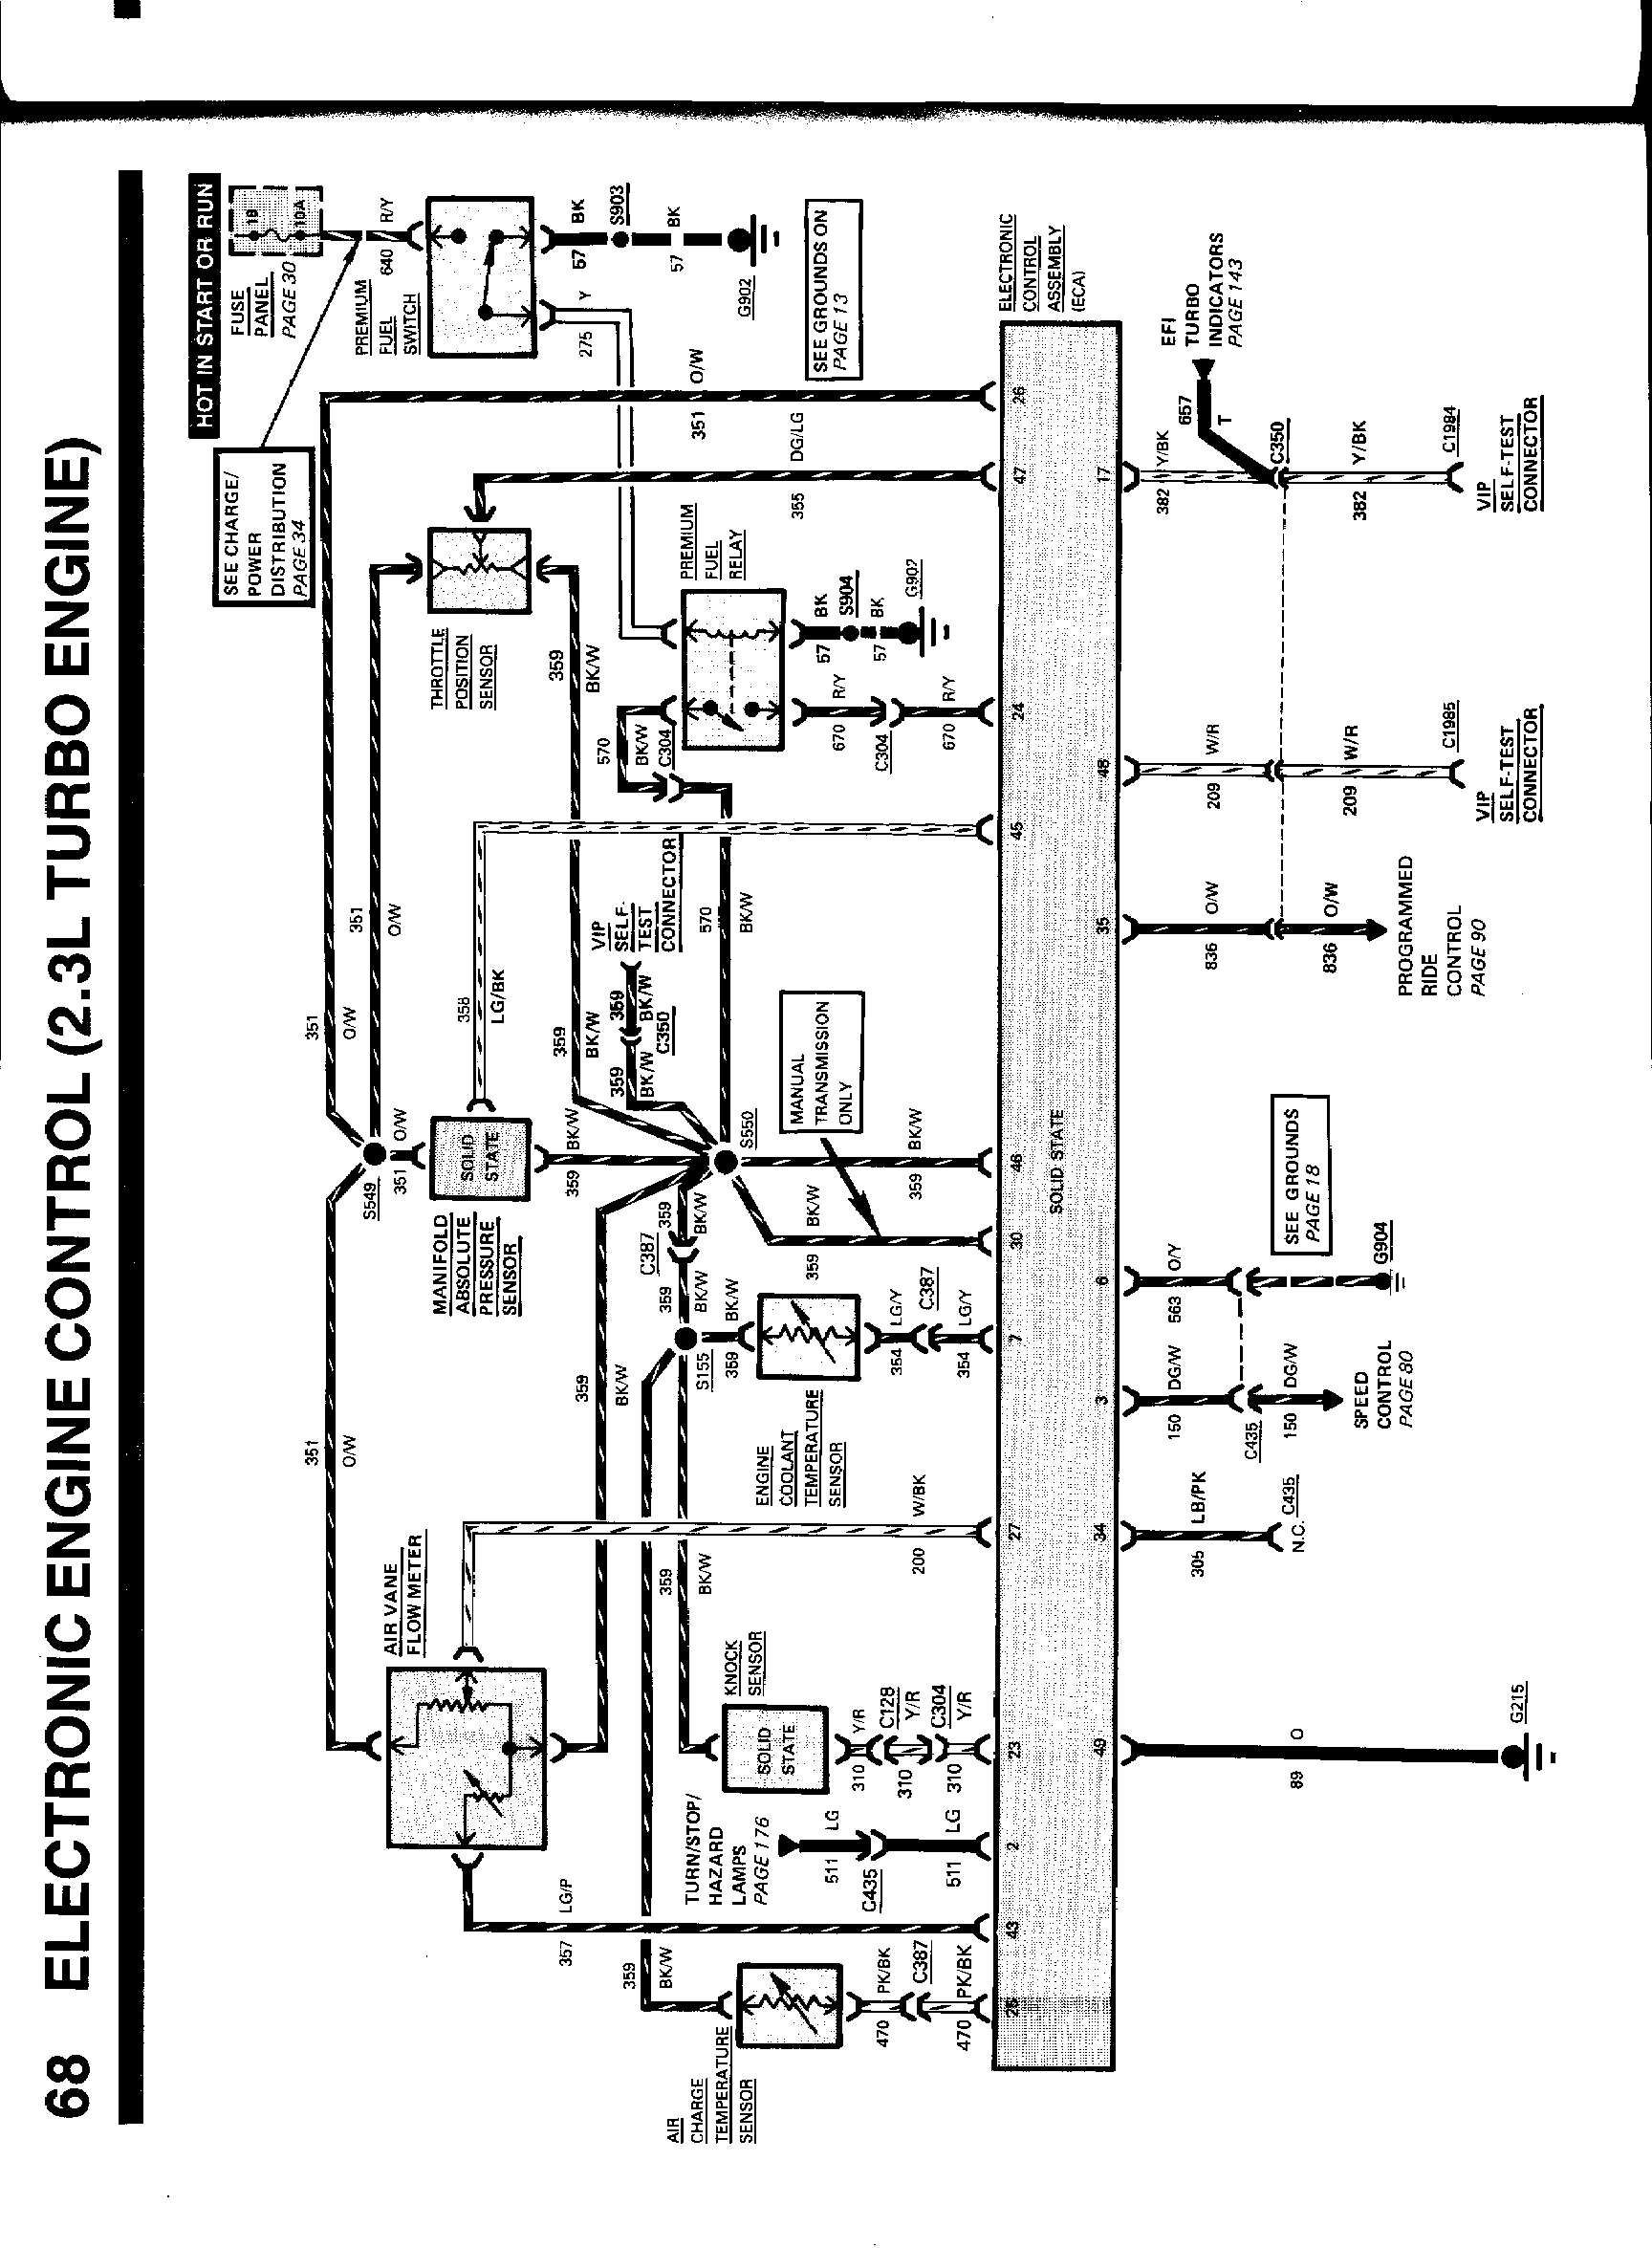 957 Thunderbird Radio Wiring Diagram ~ 957 Thunderbird Radio Wiring